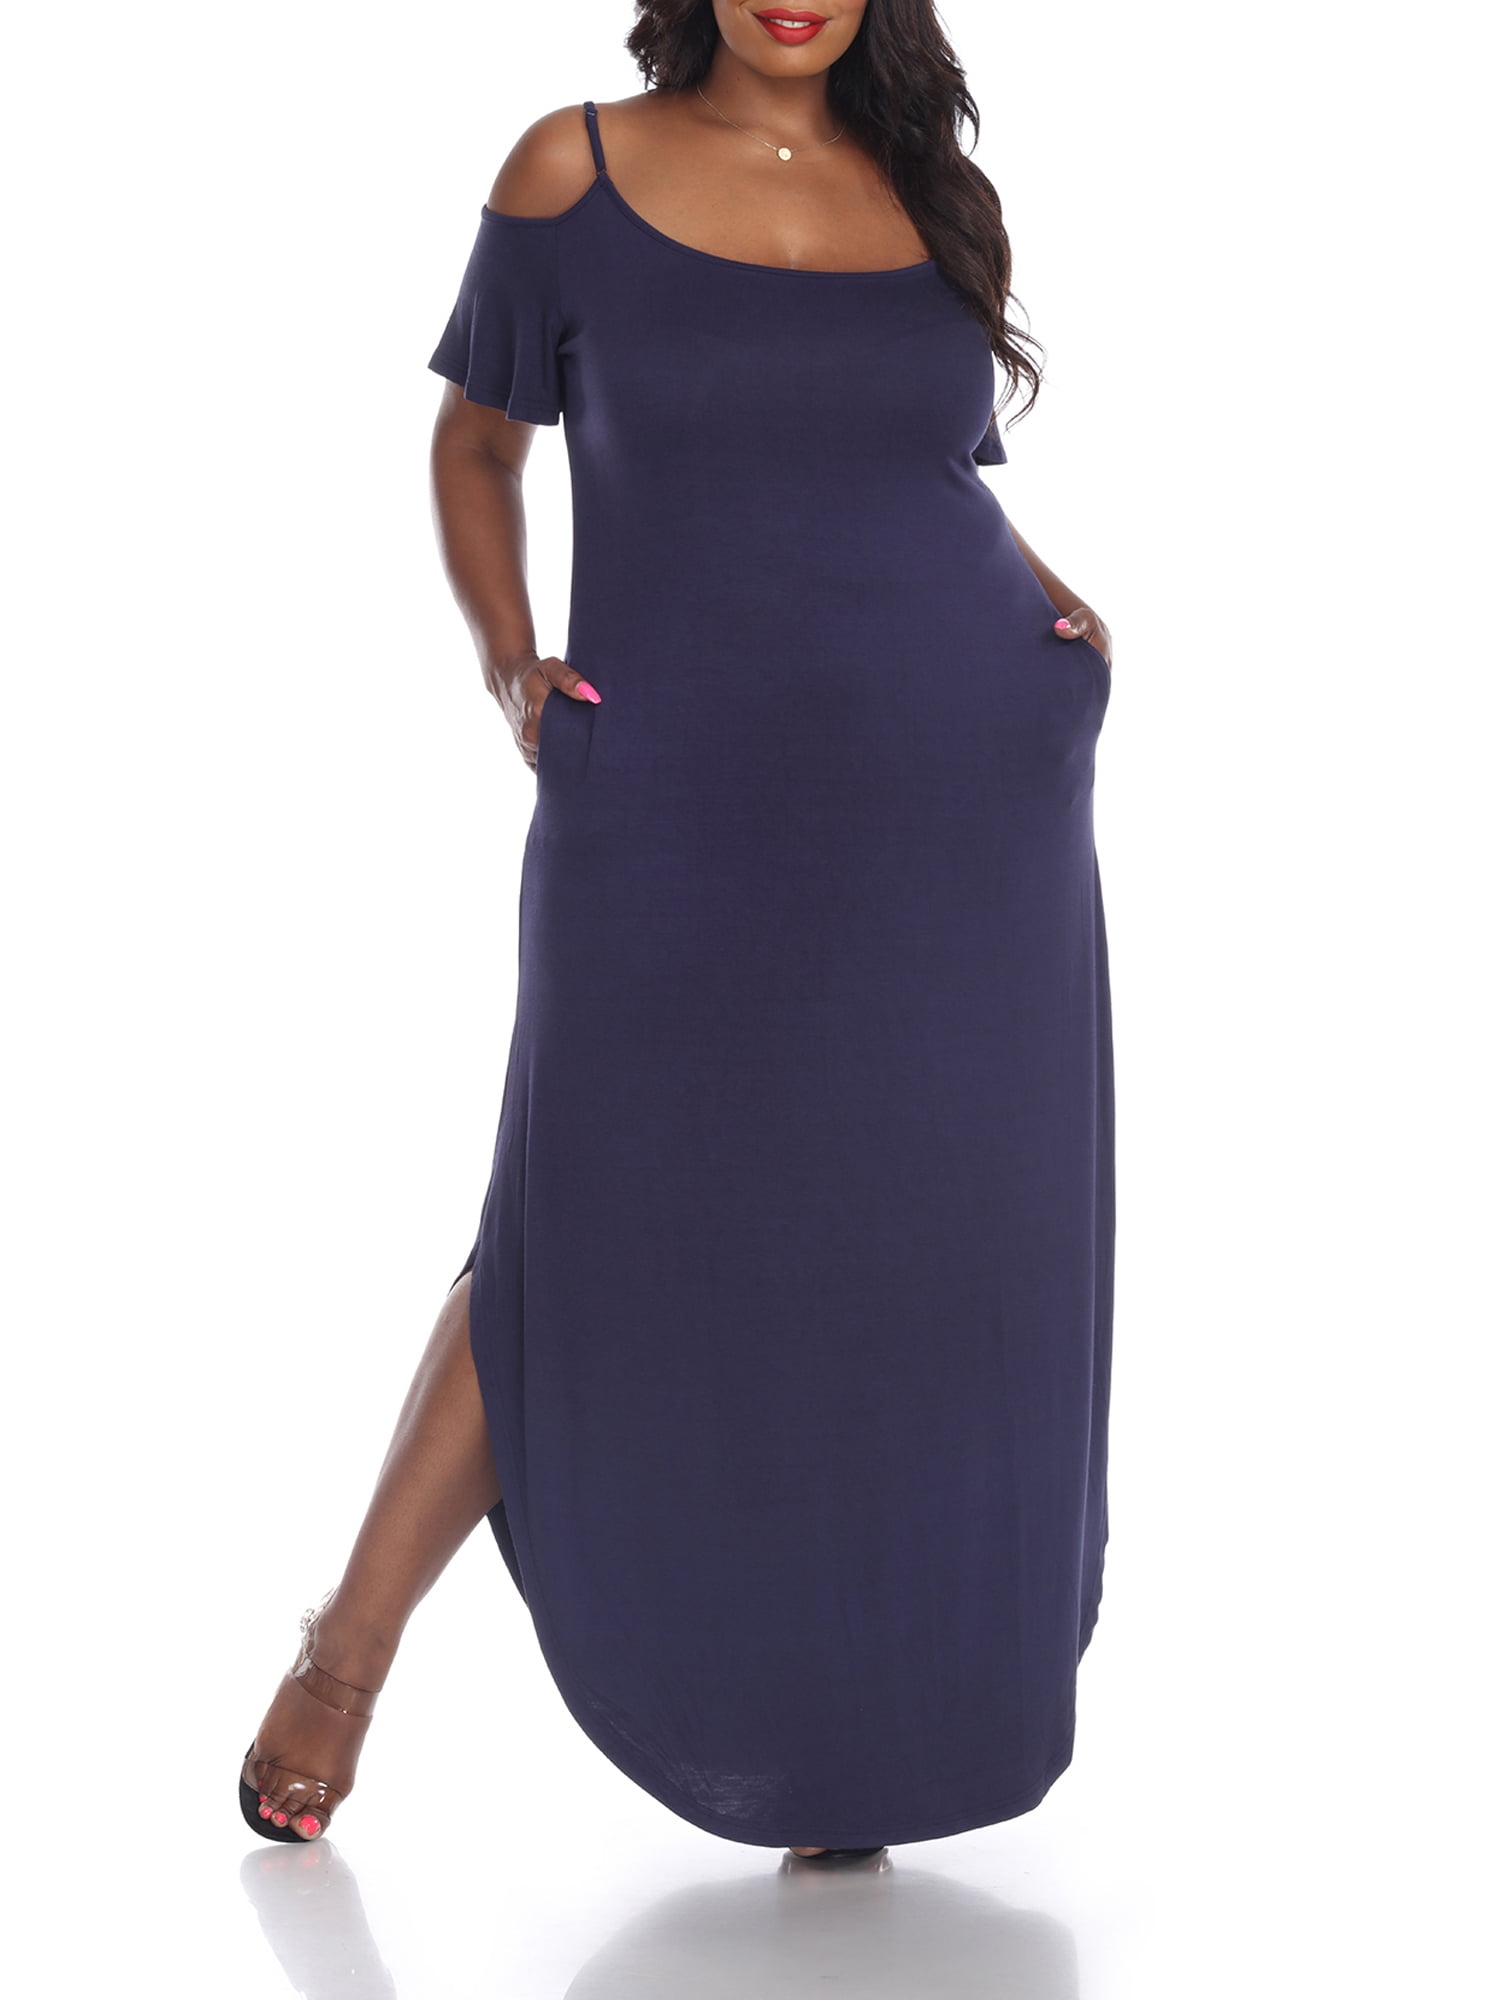 White Women's Plus Size Lexi Dress - Walmart.com